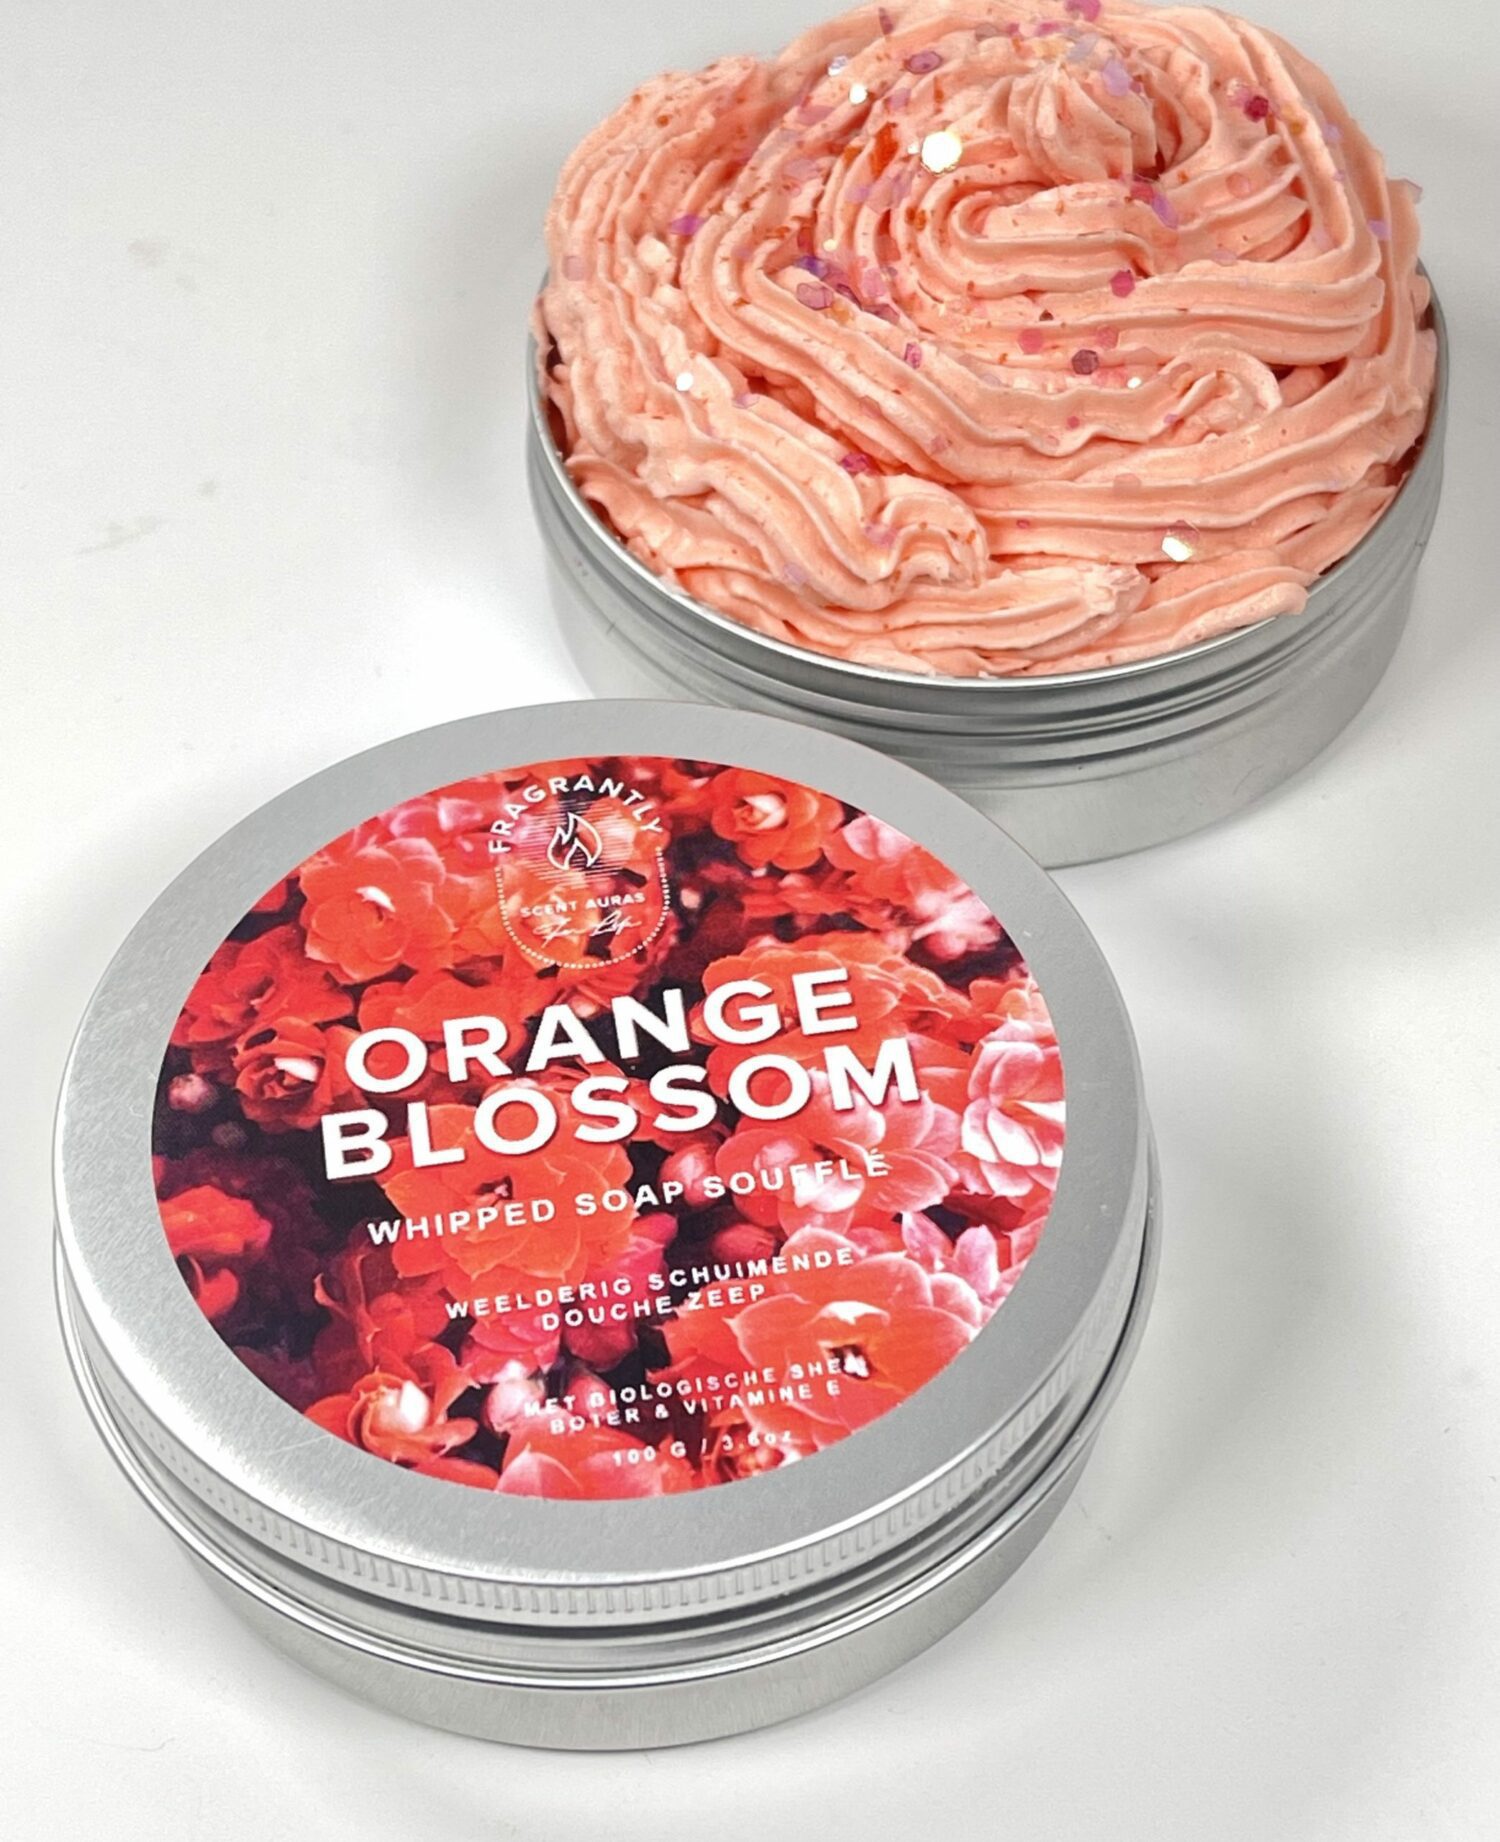 Fragrantly Orange Blossom whipped soap souffle in blik bovenaanzicht